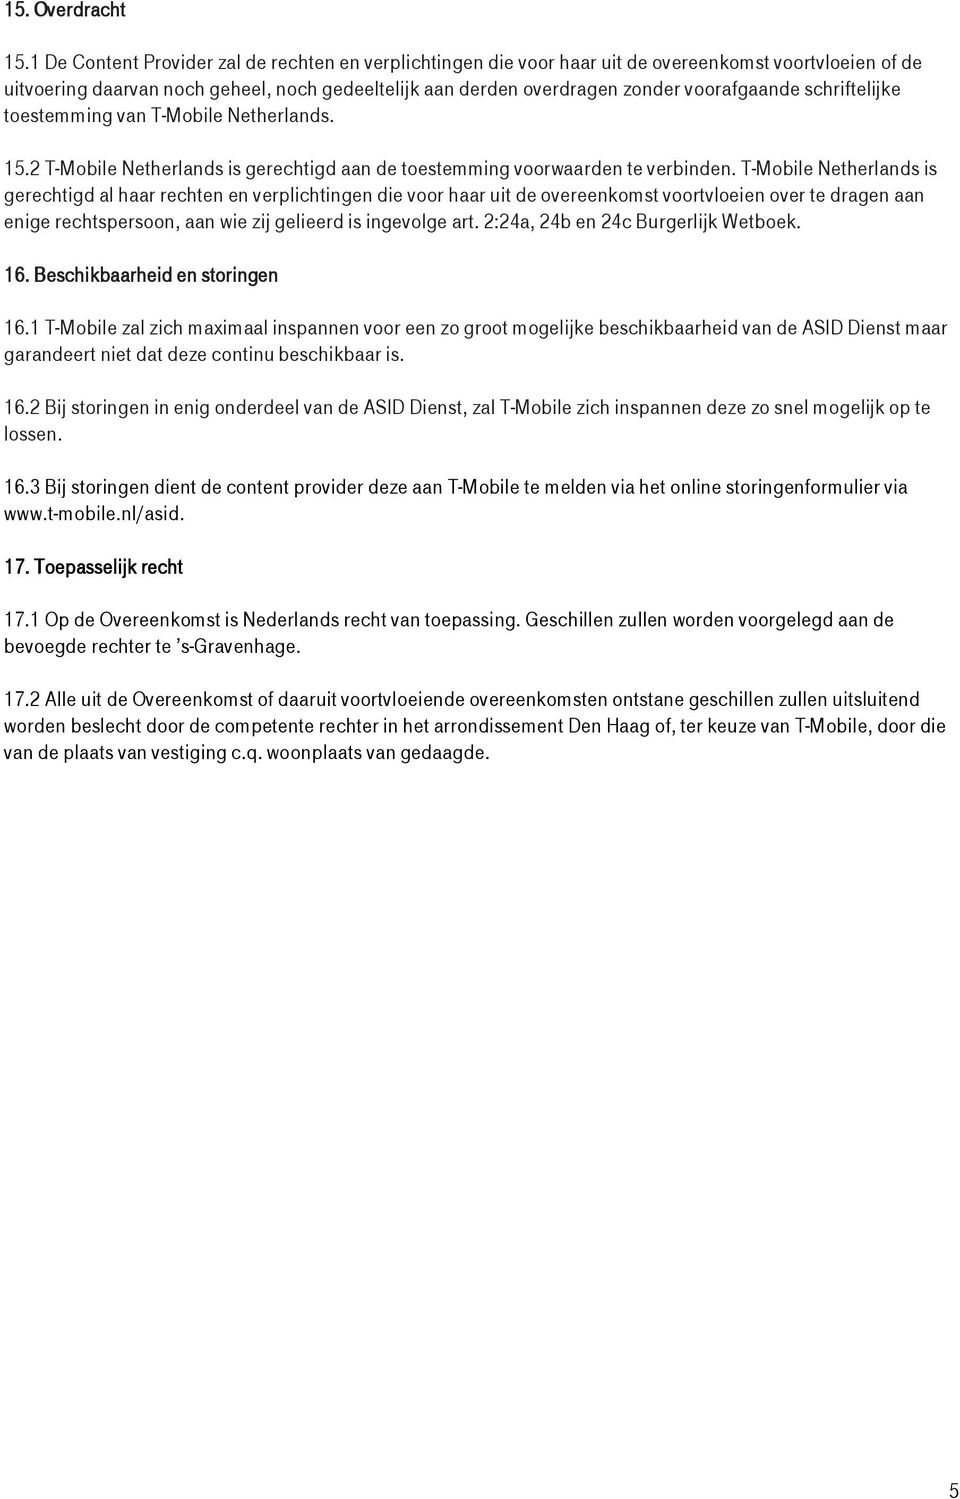 schriftelijke toestemming van T-Mobile Netherlands. 15.2 T-Mobile Netherlands is gerechtigd aan de toestemming voorwaarden te verbinden.